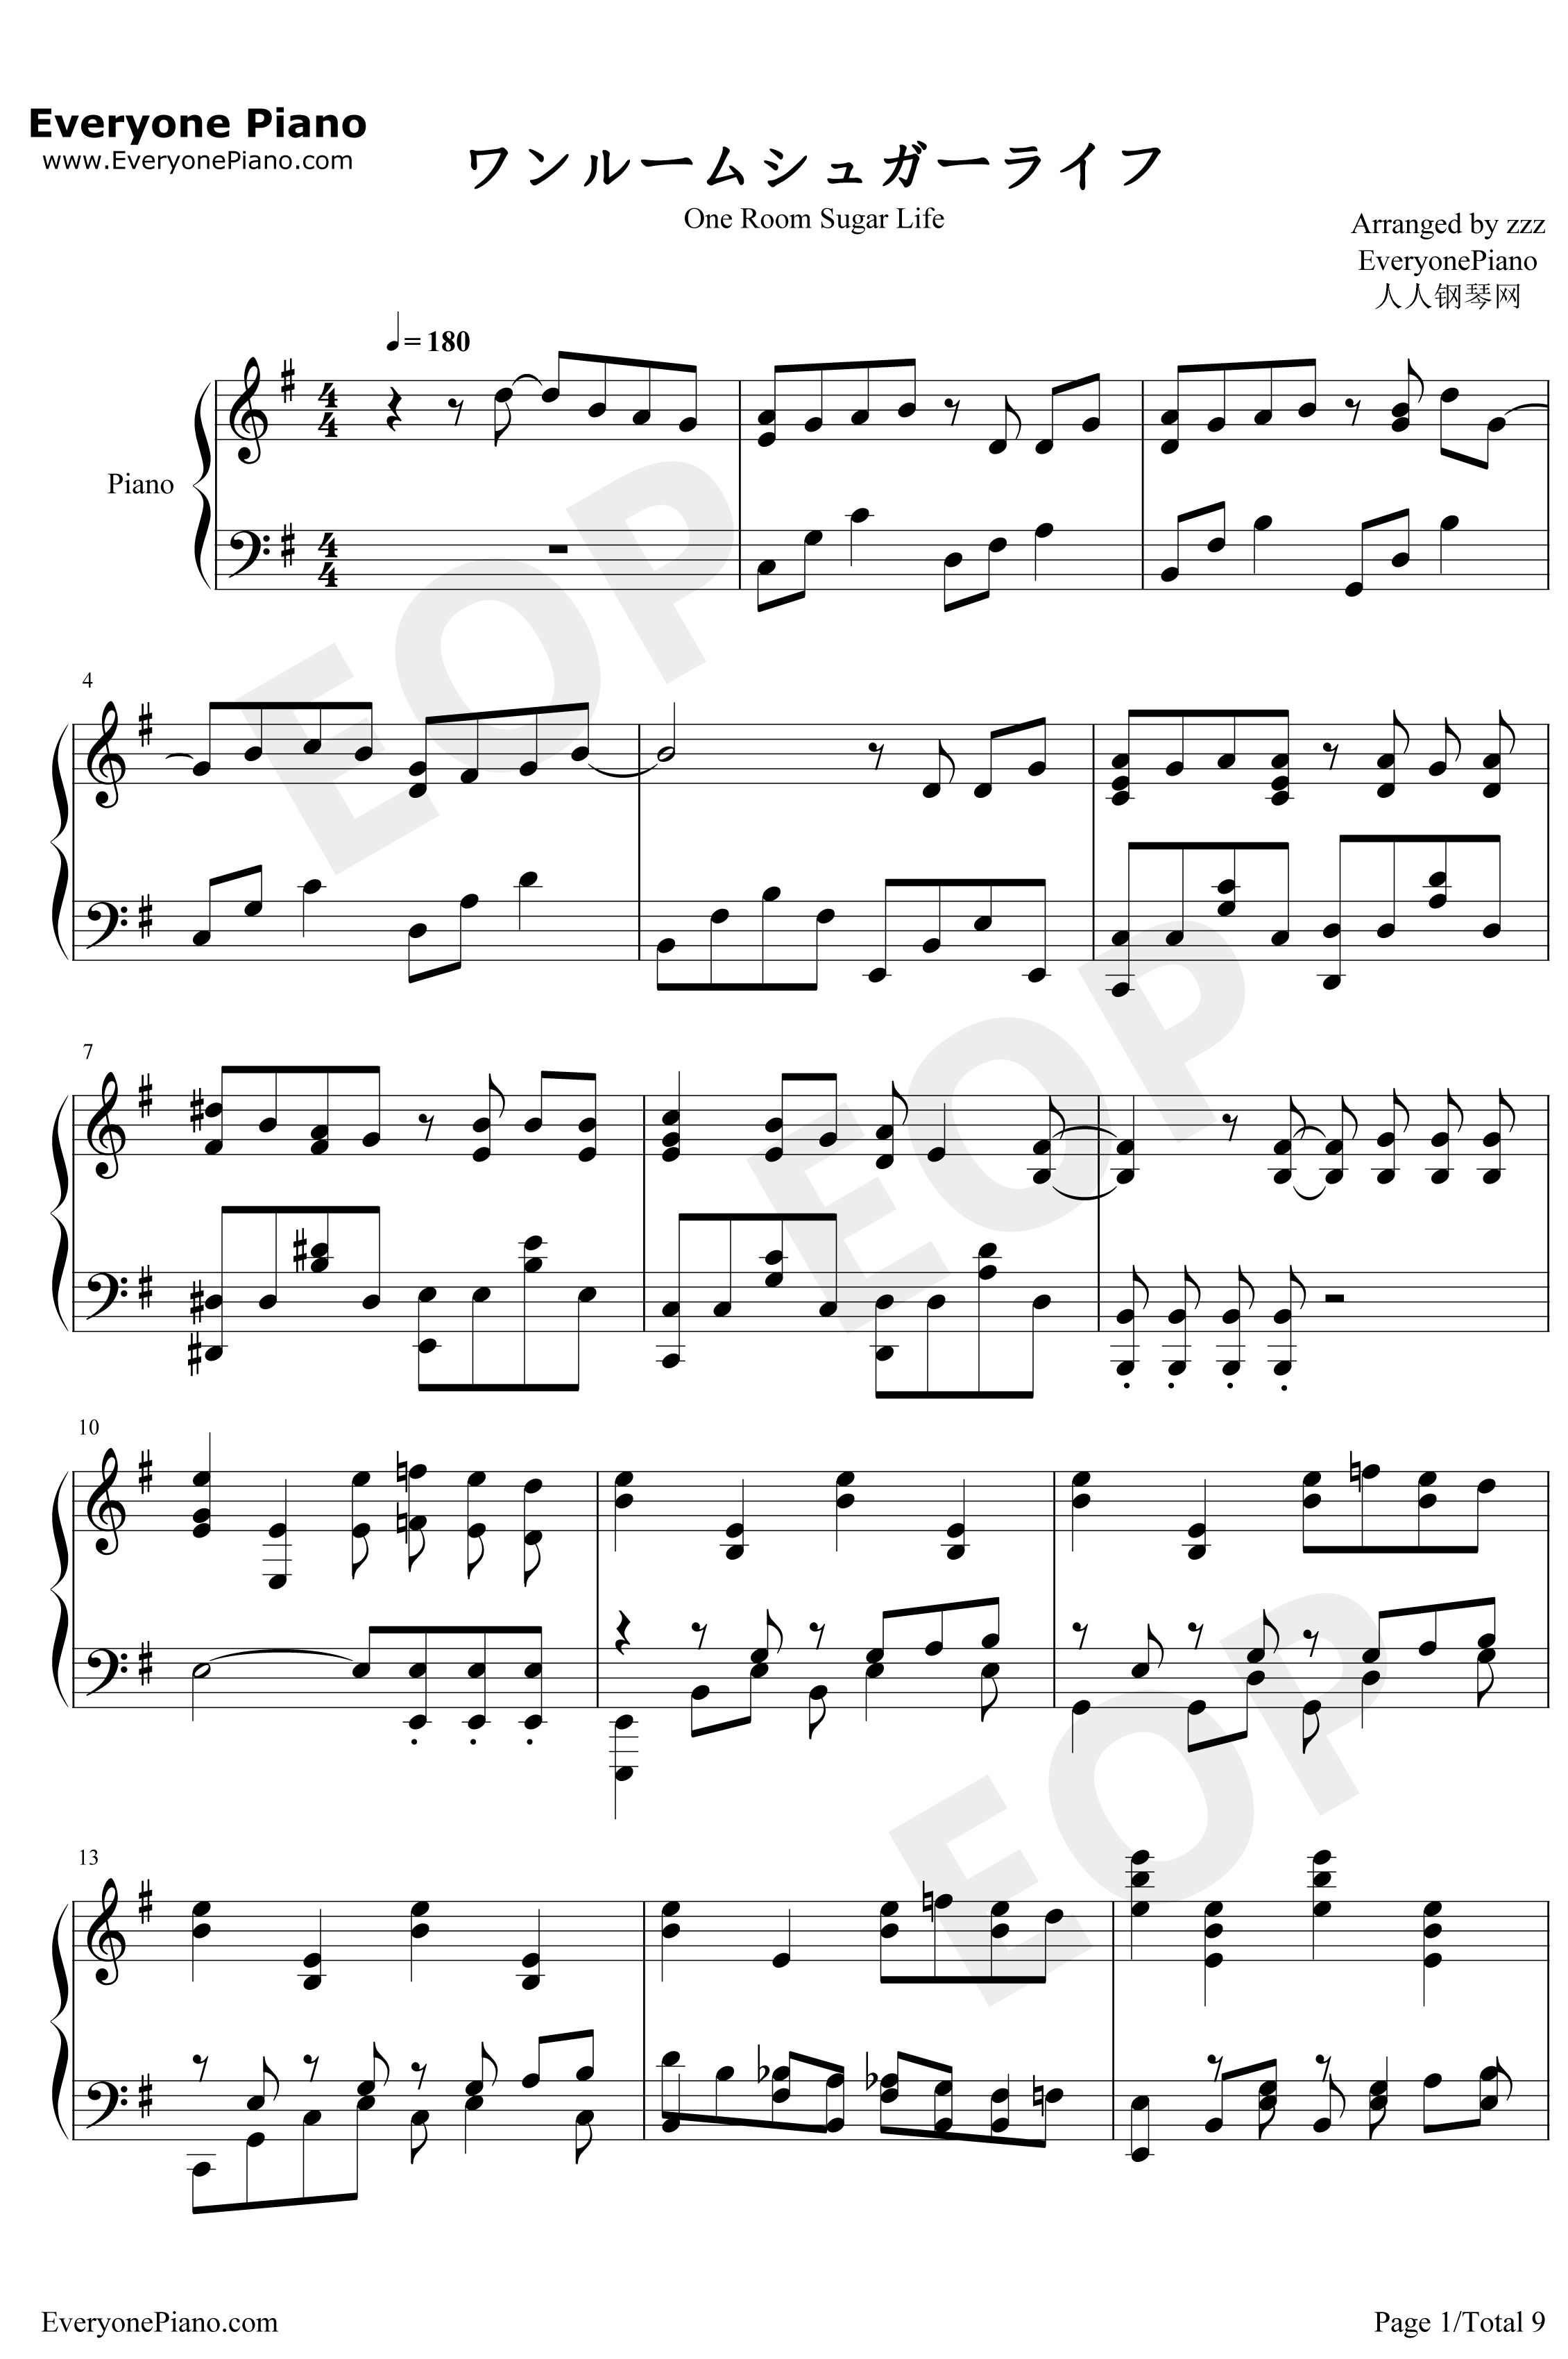 ワンルームシュガーライフ钢琴谱-ナナヲアカリ-幸福甜蜜生活OP1